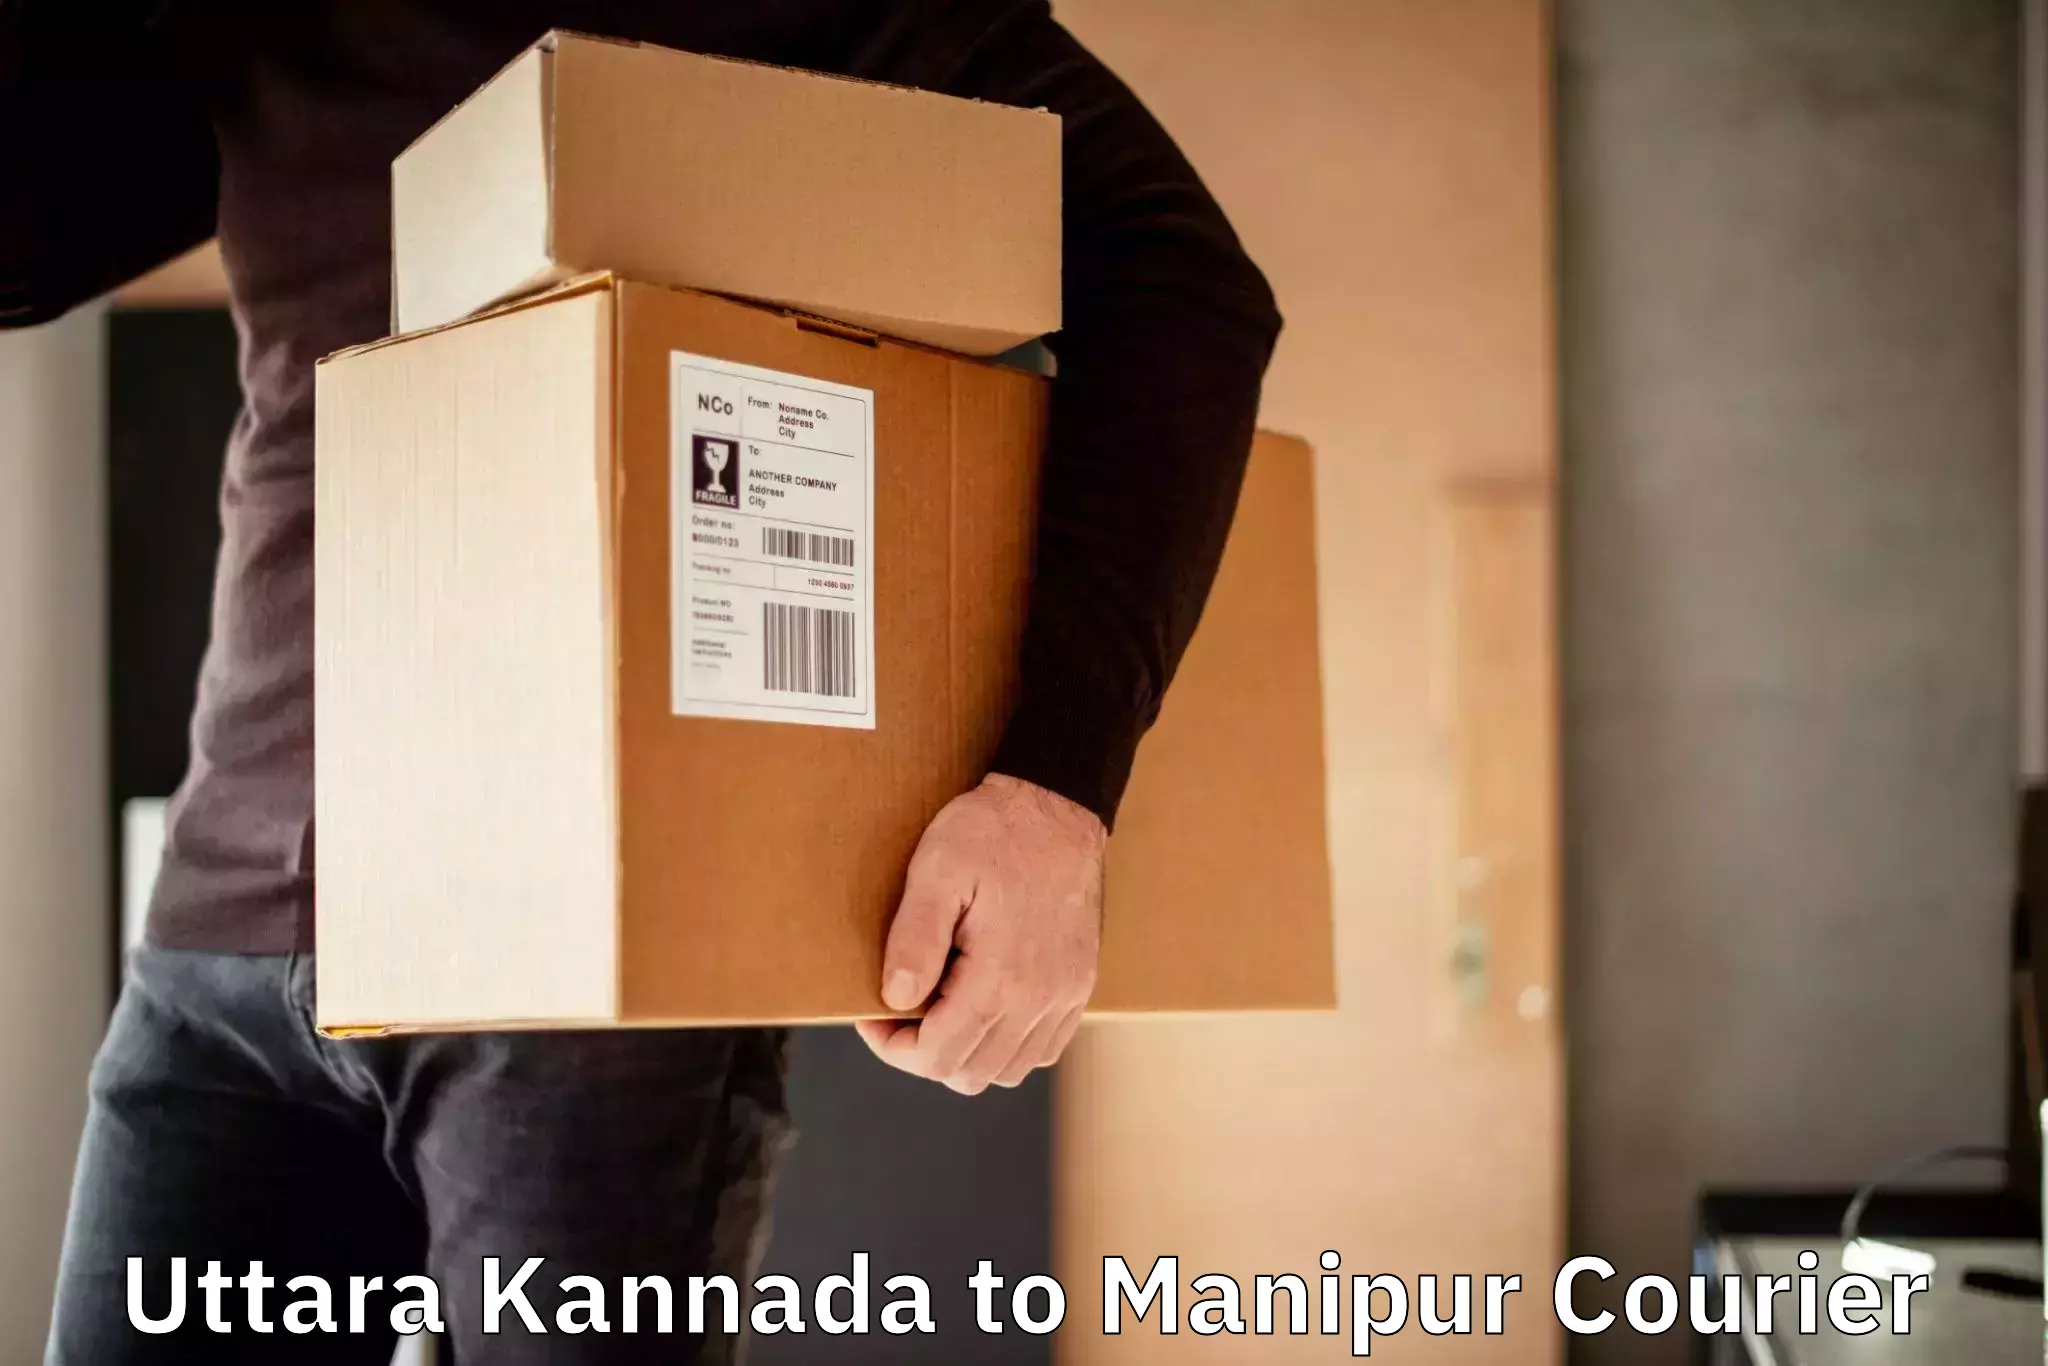 24/7 shipping services Uttara Kannada to IIIT Senapati